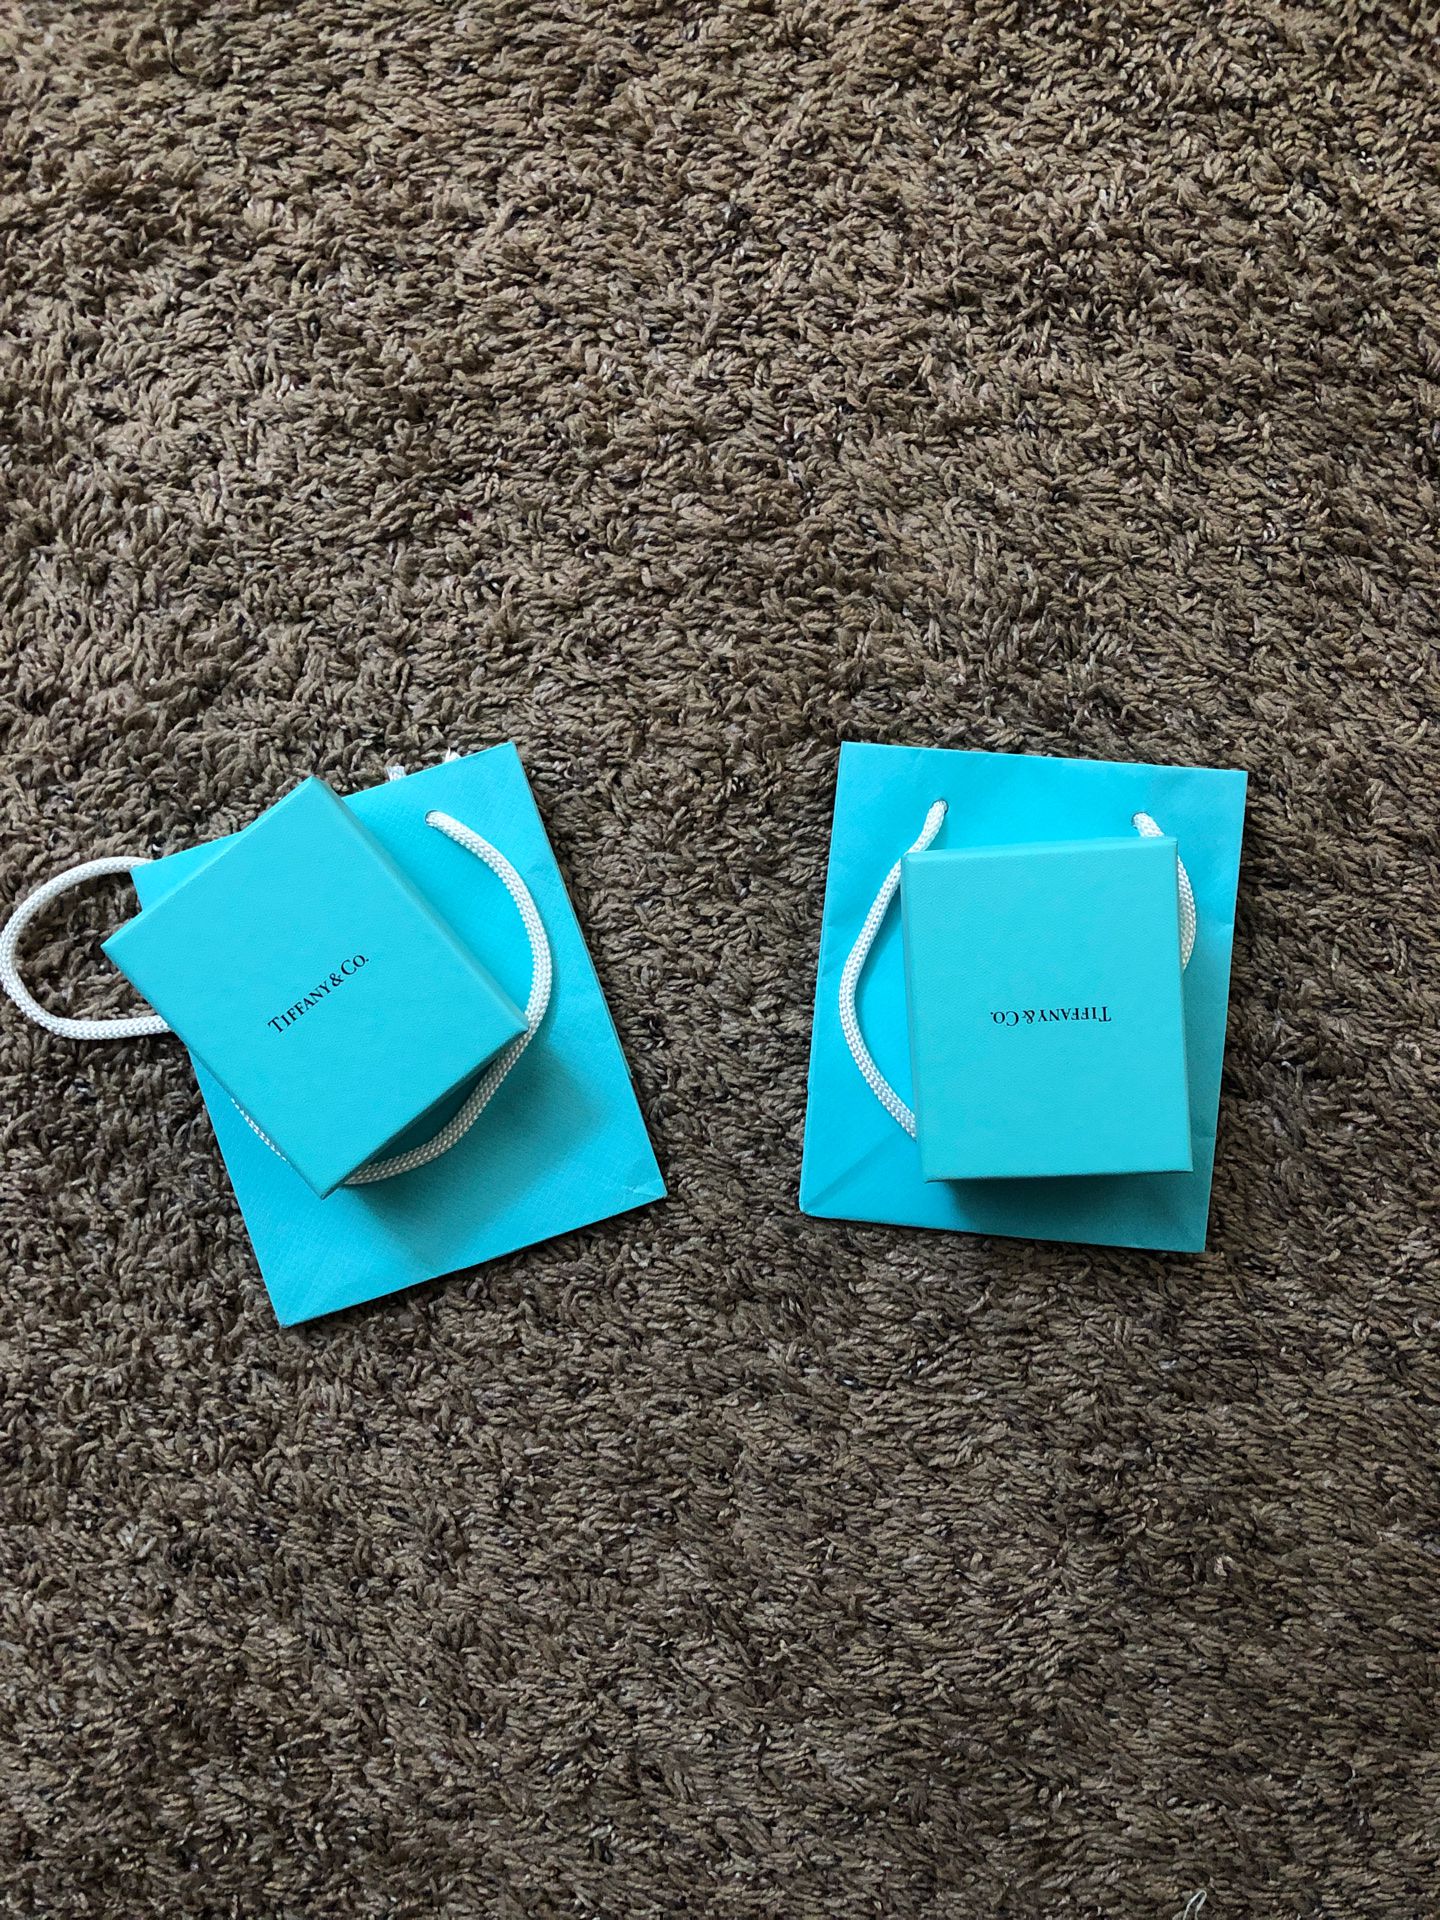 Tiffany box/bags